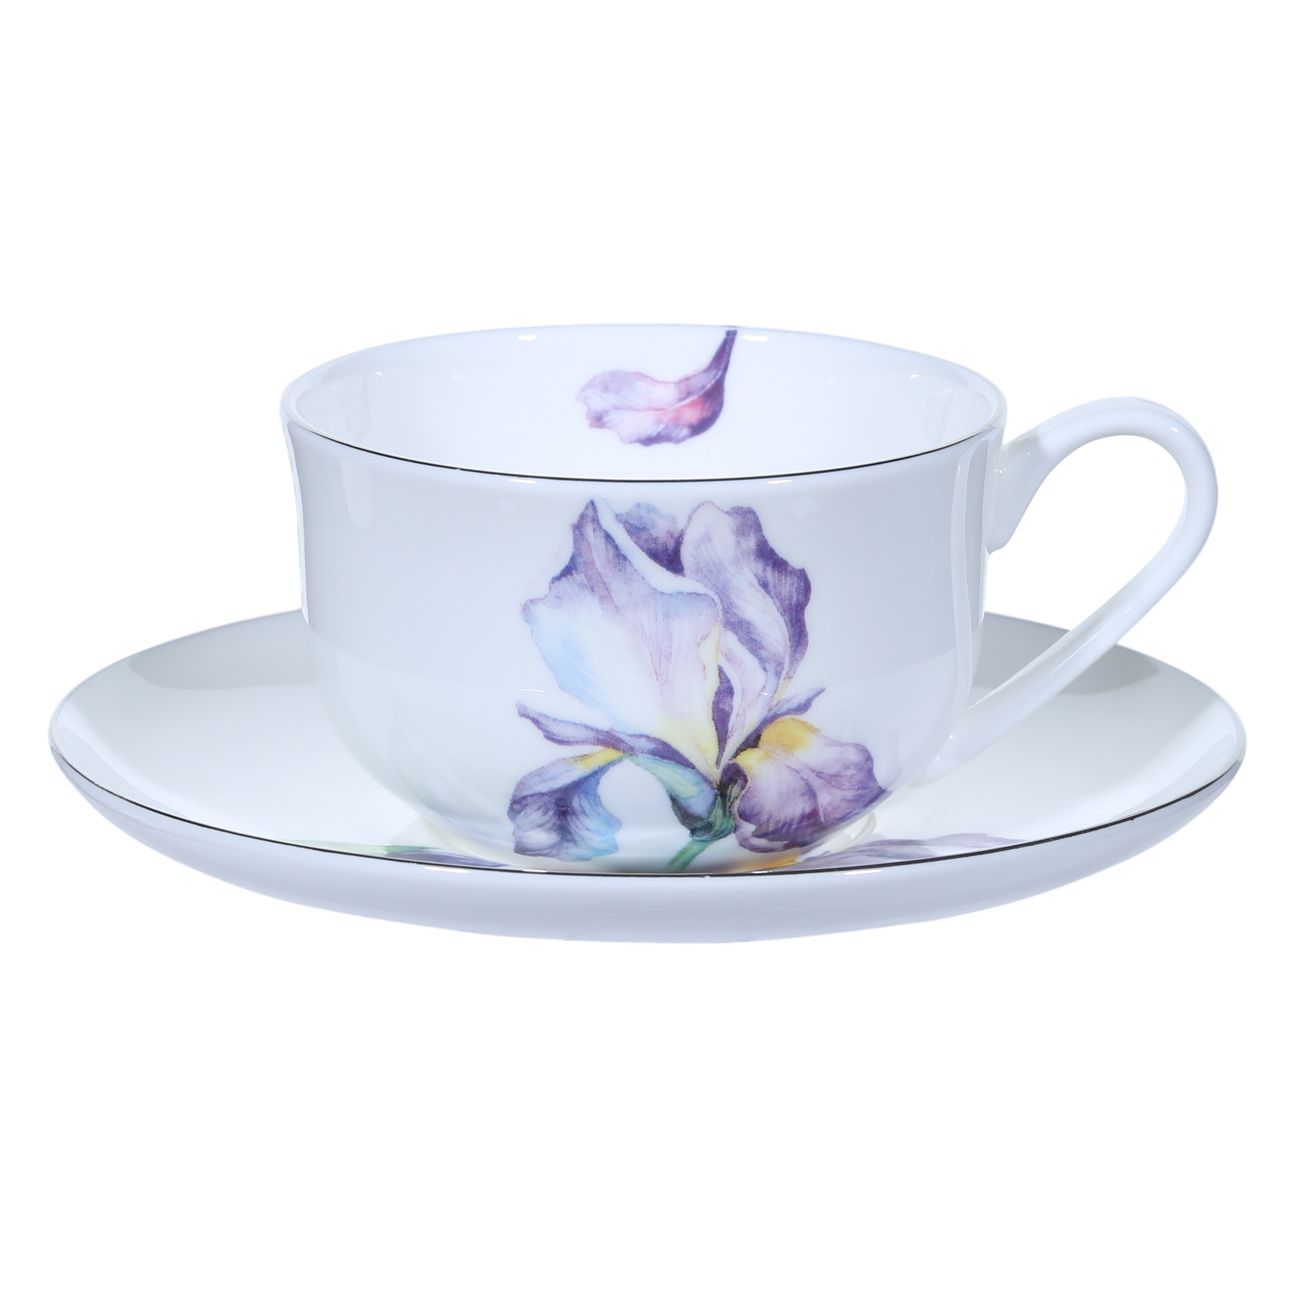 Пара чайная, 6 перс, 12 пр, 275 мл, фарфор F, с серебристым кантом, Ирис, Antarctica Flowers изображение № 2